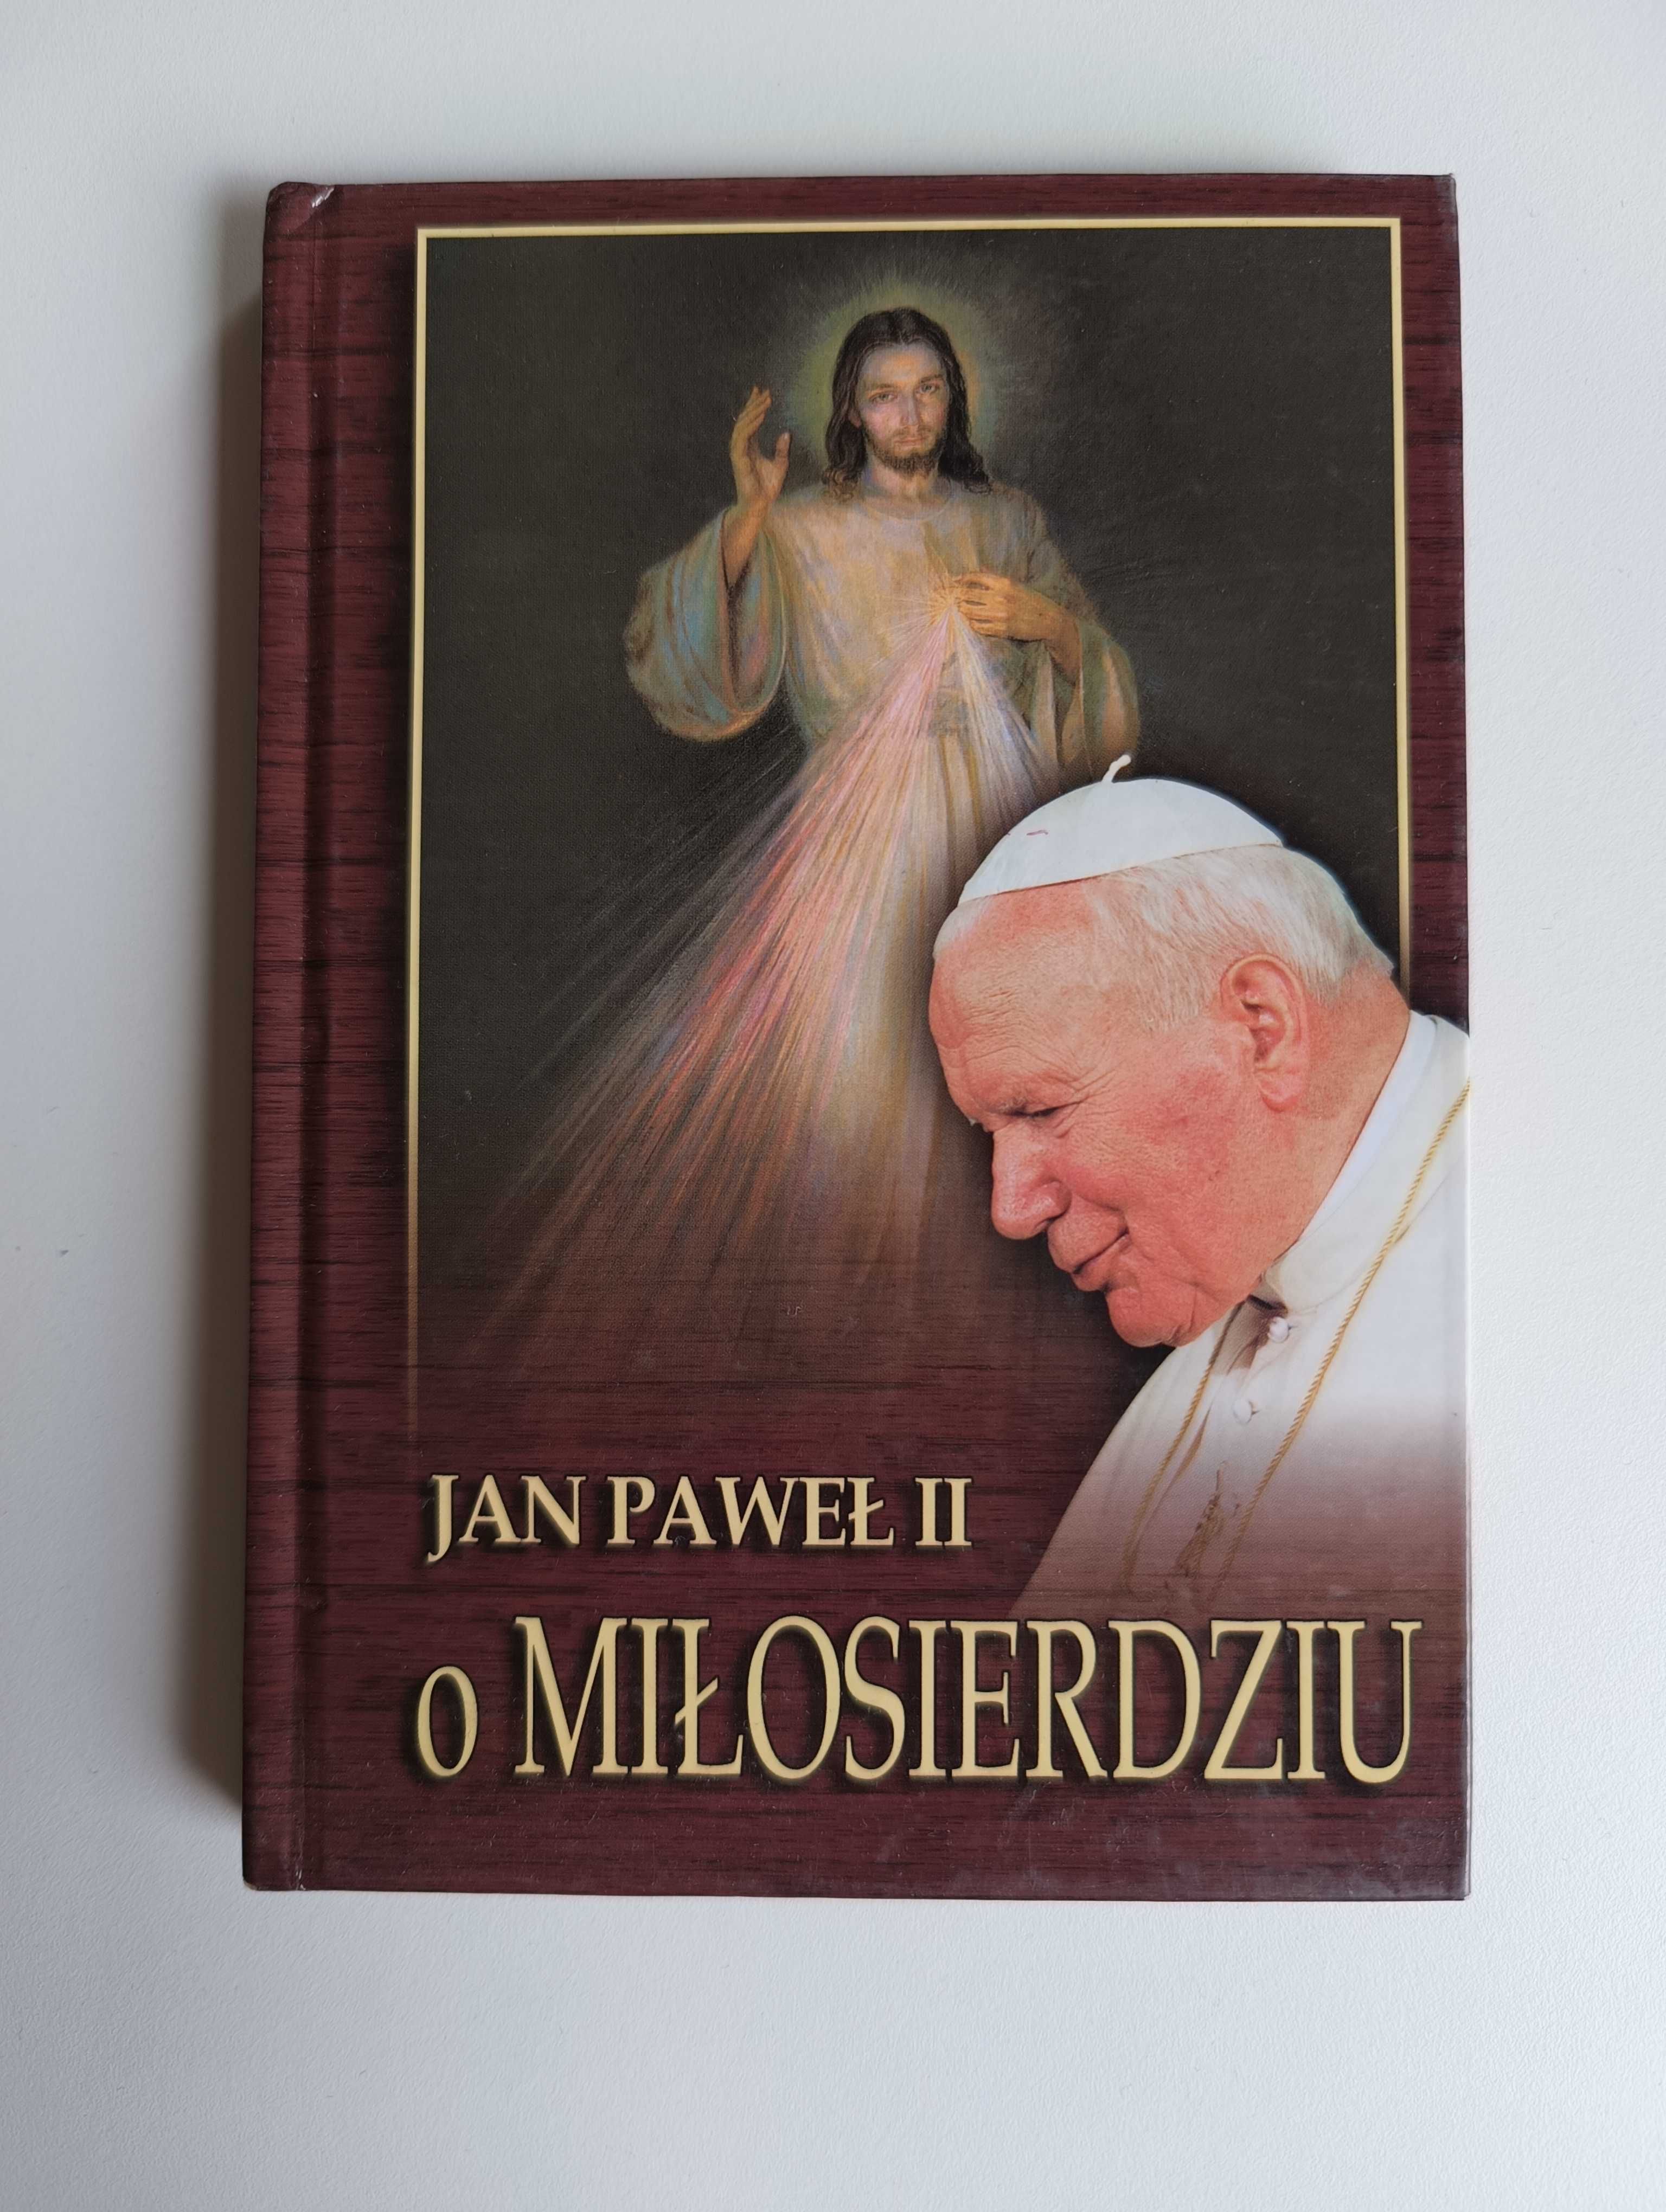 Jan Paweł II "O miłosierdziu"